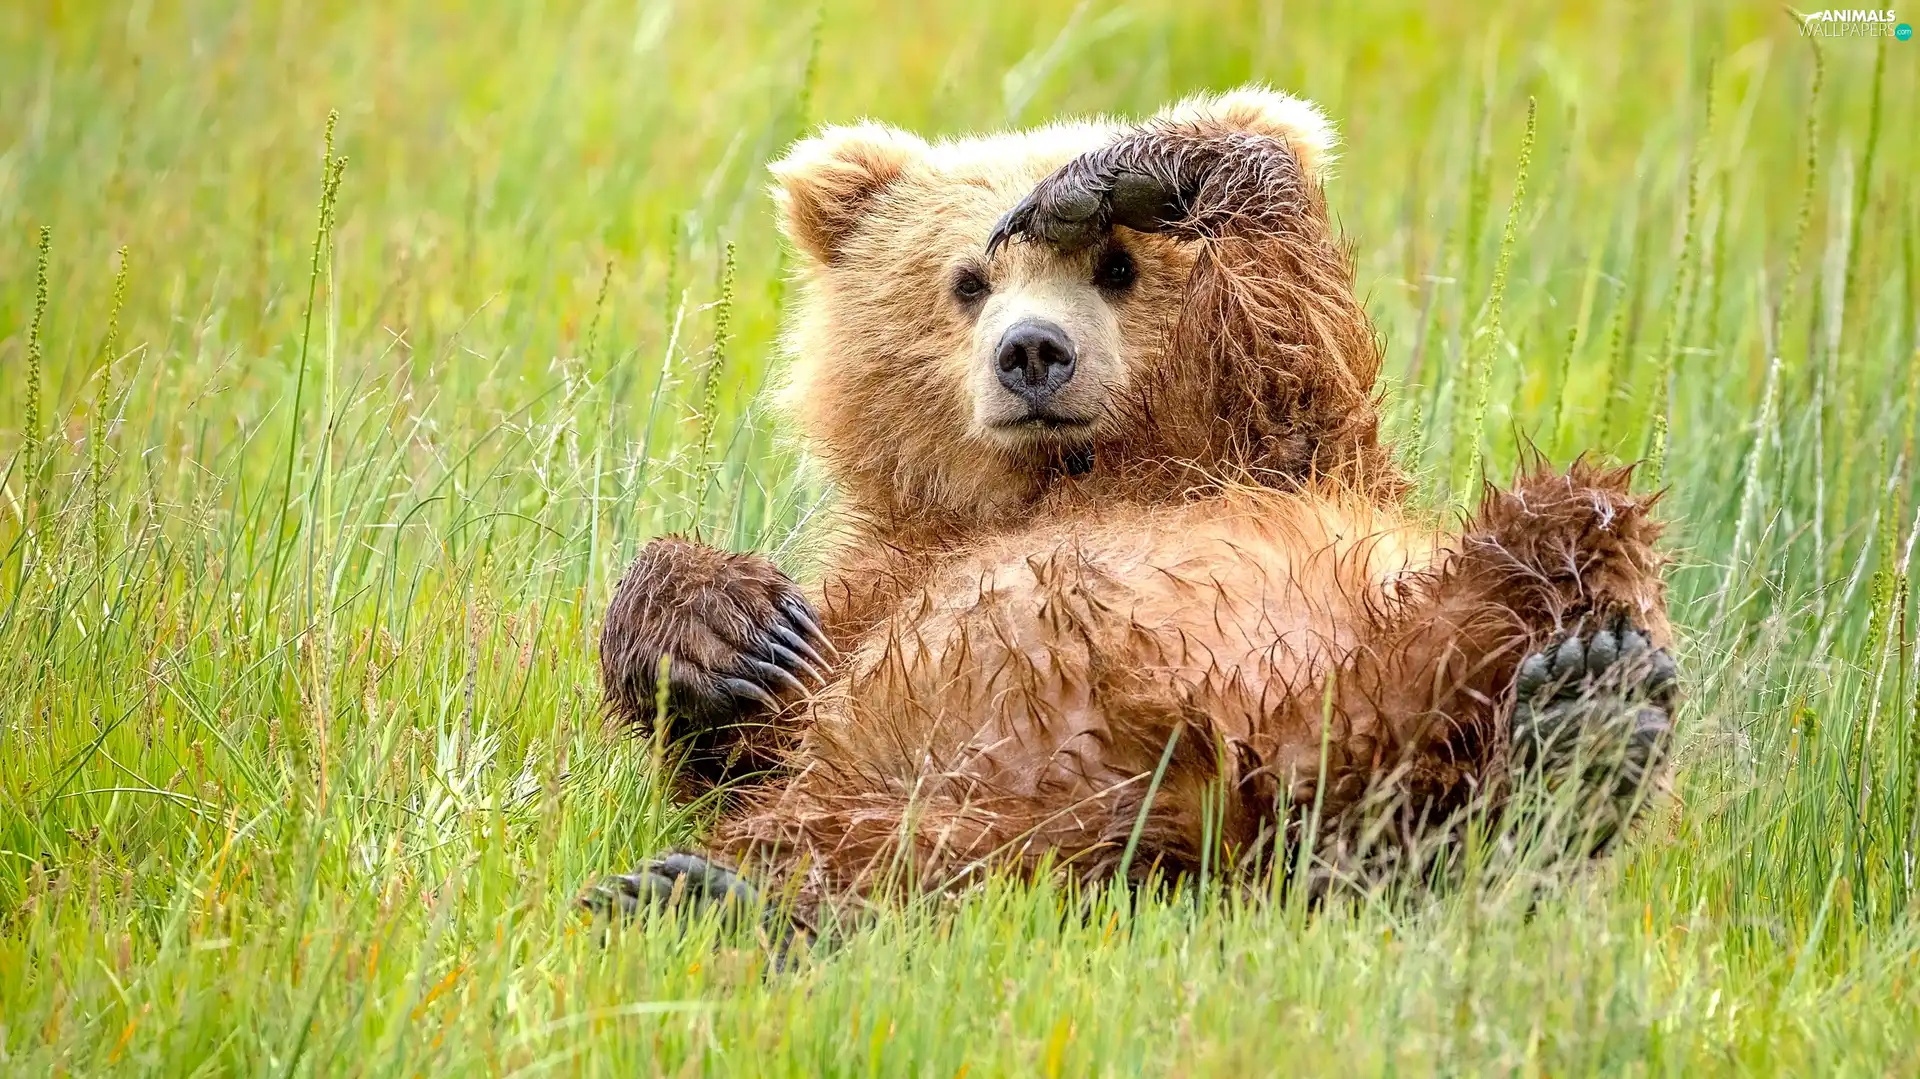 small, little bear, grass, Bear